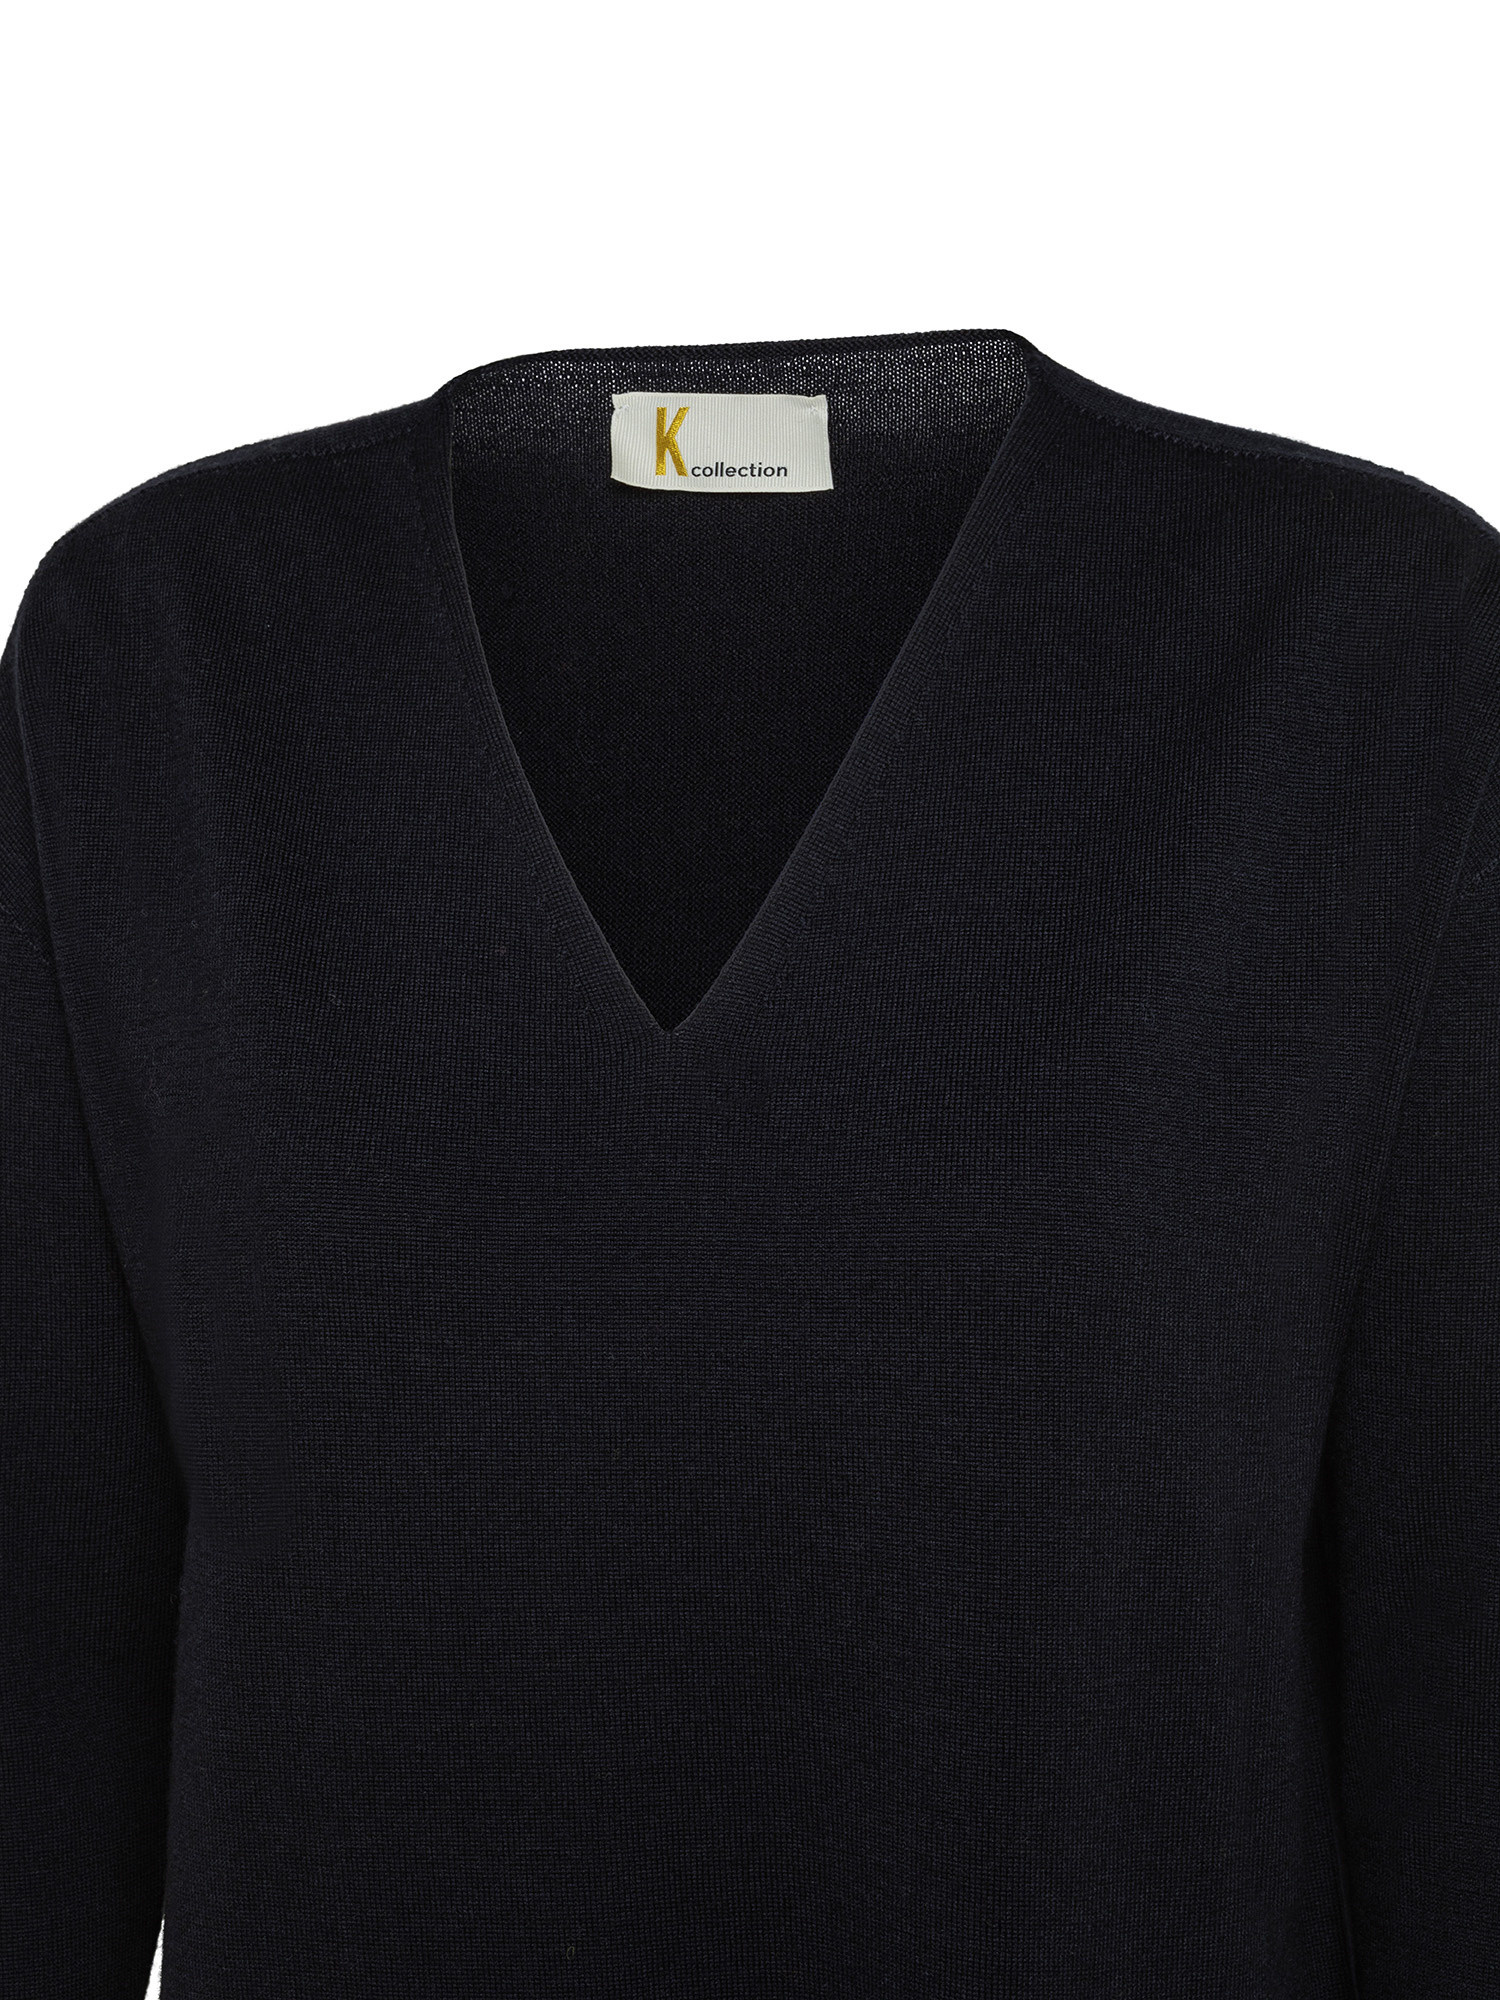 K Collection - V-neck sweater, Black, large image number 2